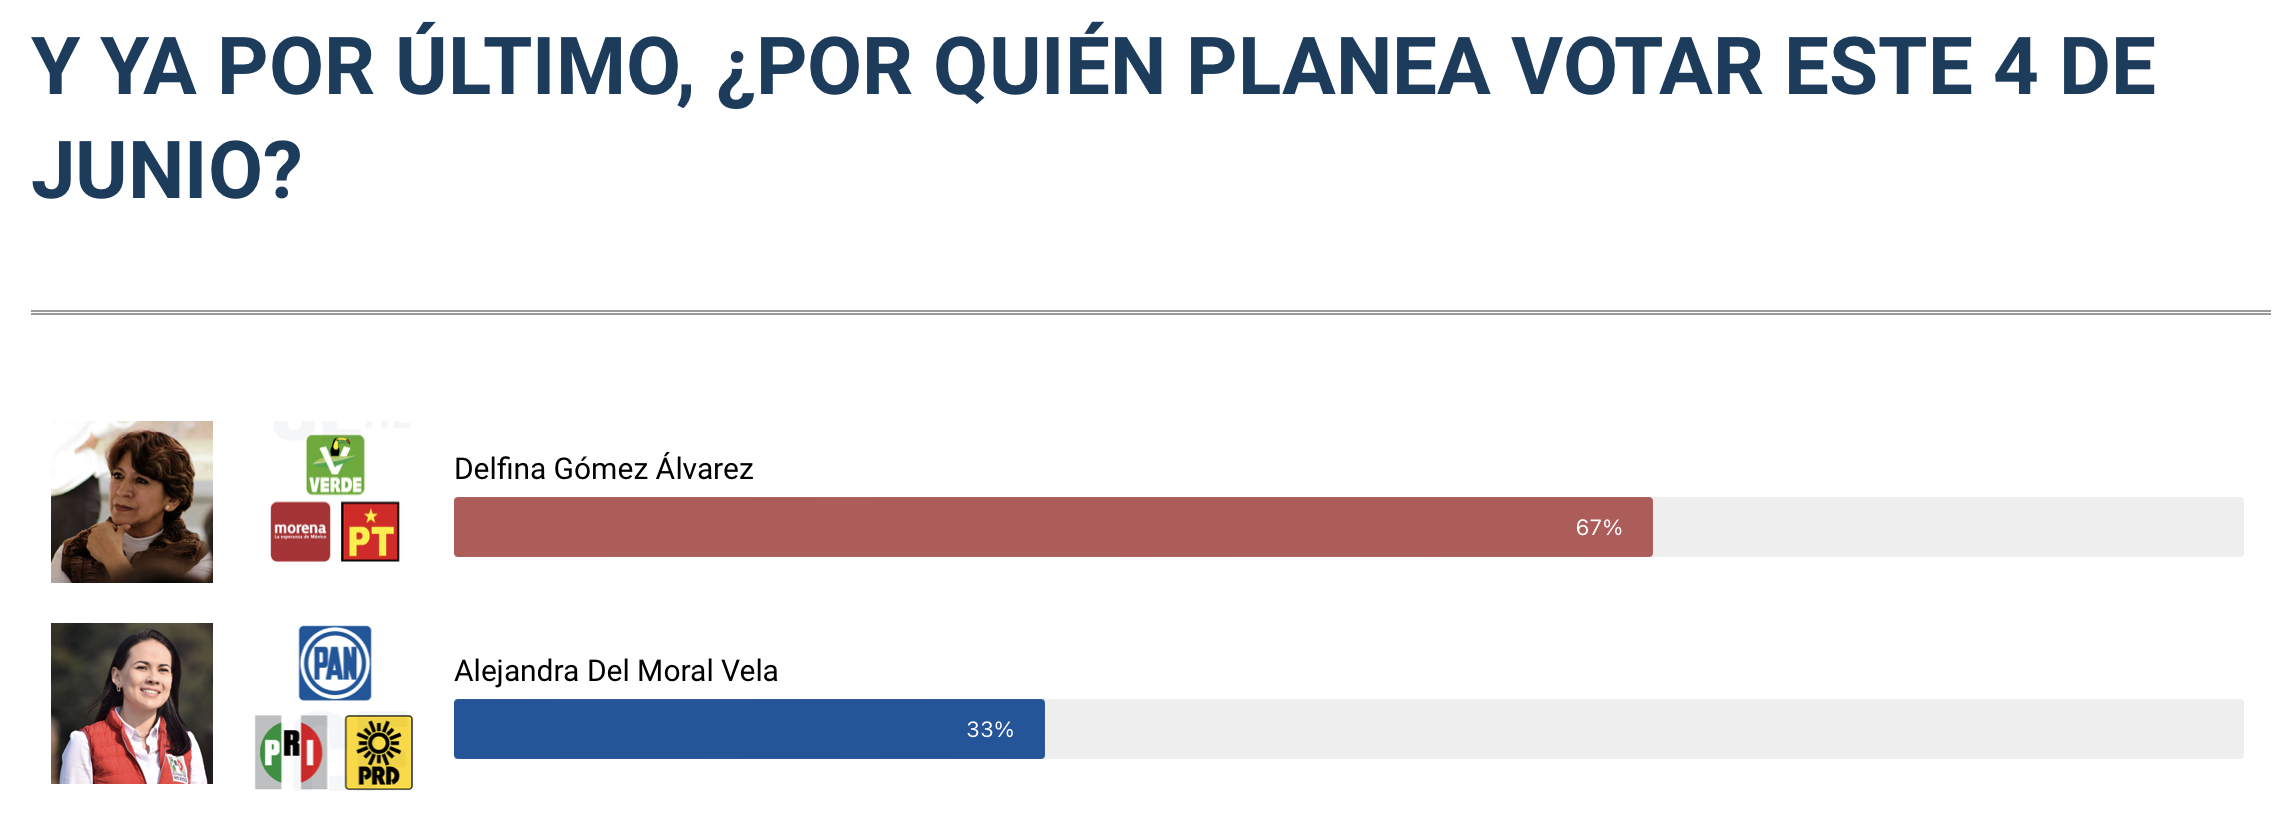 La intención del voto favorece a Delfina Gómez por arriba del 50%. 